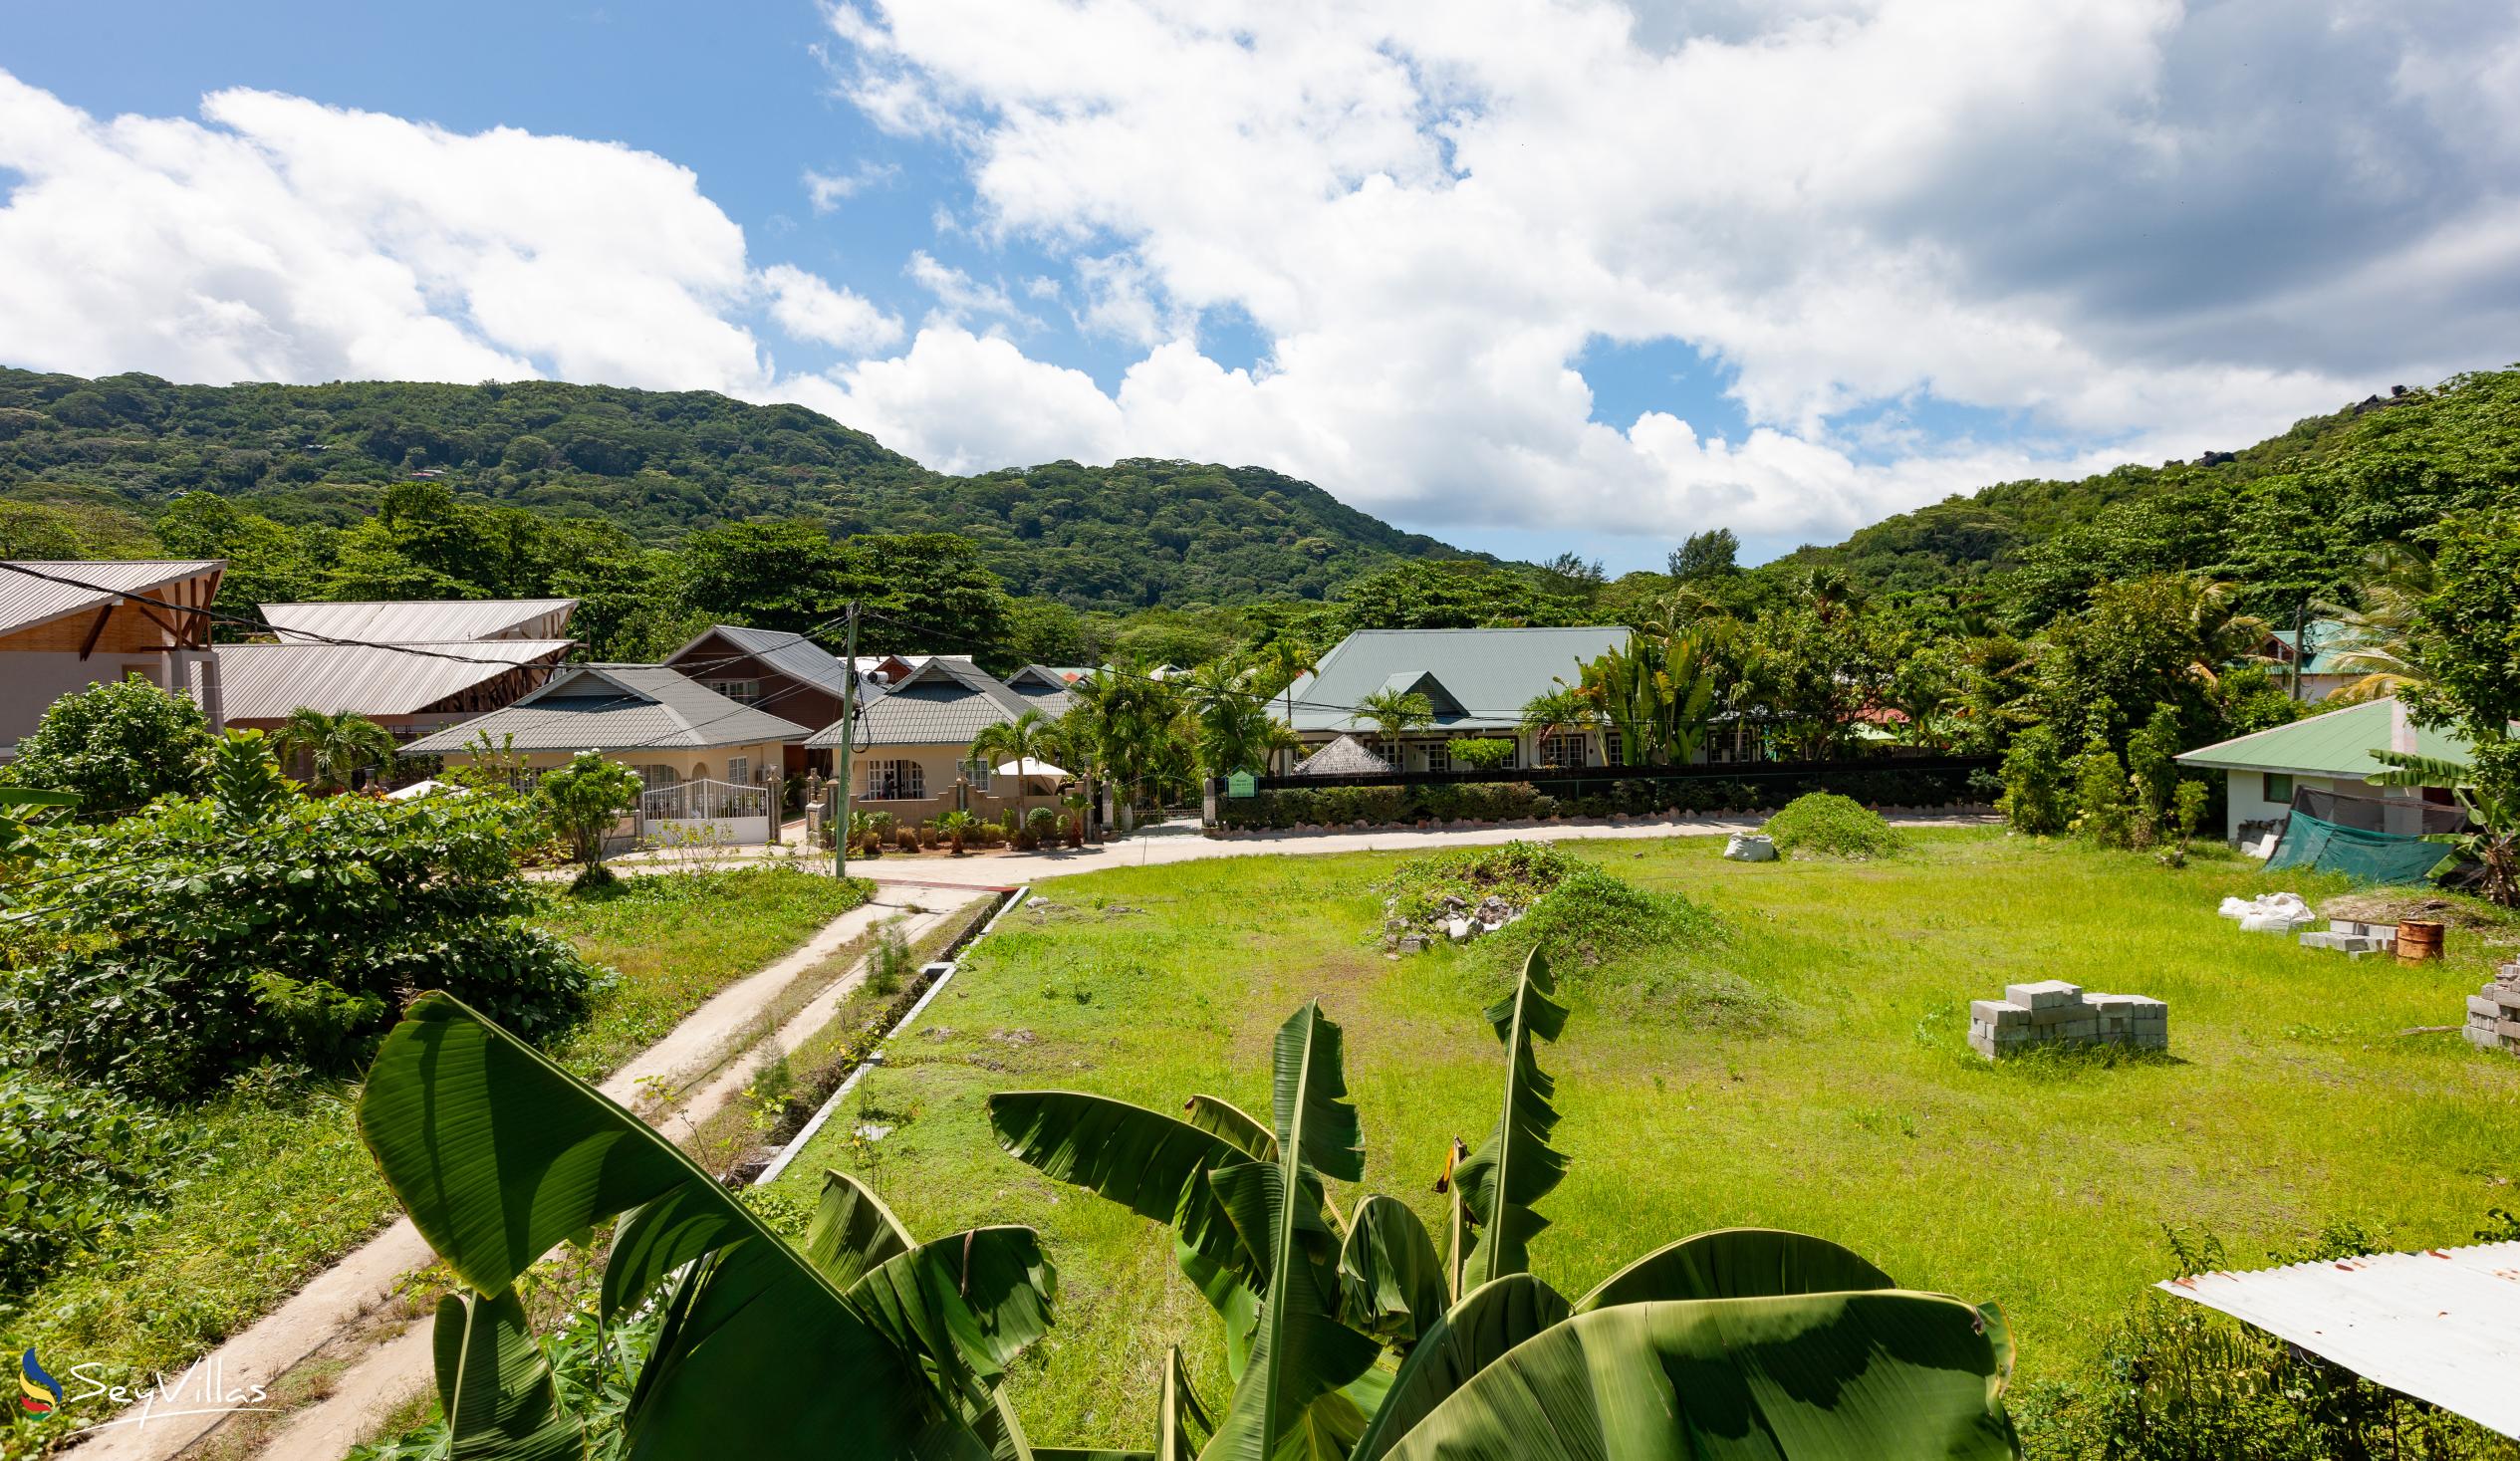 Foto 19: Bwaver Cottage - Posizione - La Digue (Seychelles)